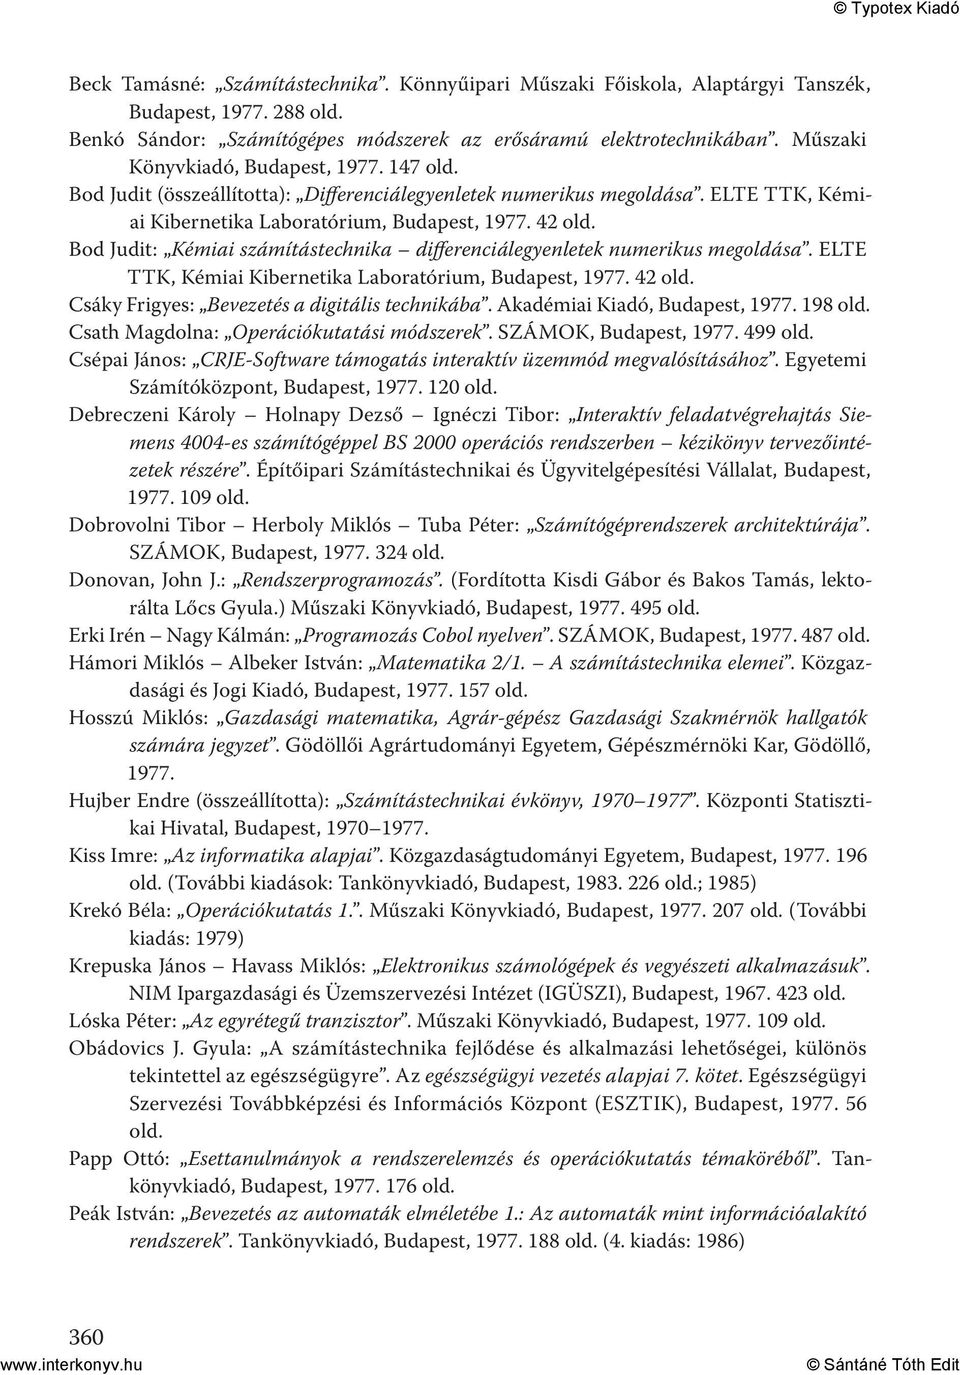 42 Bod Judit: Kémiai számítástechnika differenciálegyenletek numerikus megoldása. ELTE TTK, Kémiai Kibernetika Laboratórium, Budapest, 1977. 42 Csáky Frigyes: Bevezetés a digitális technikába.